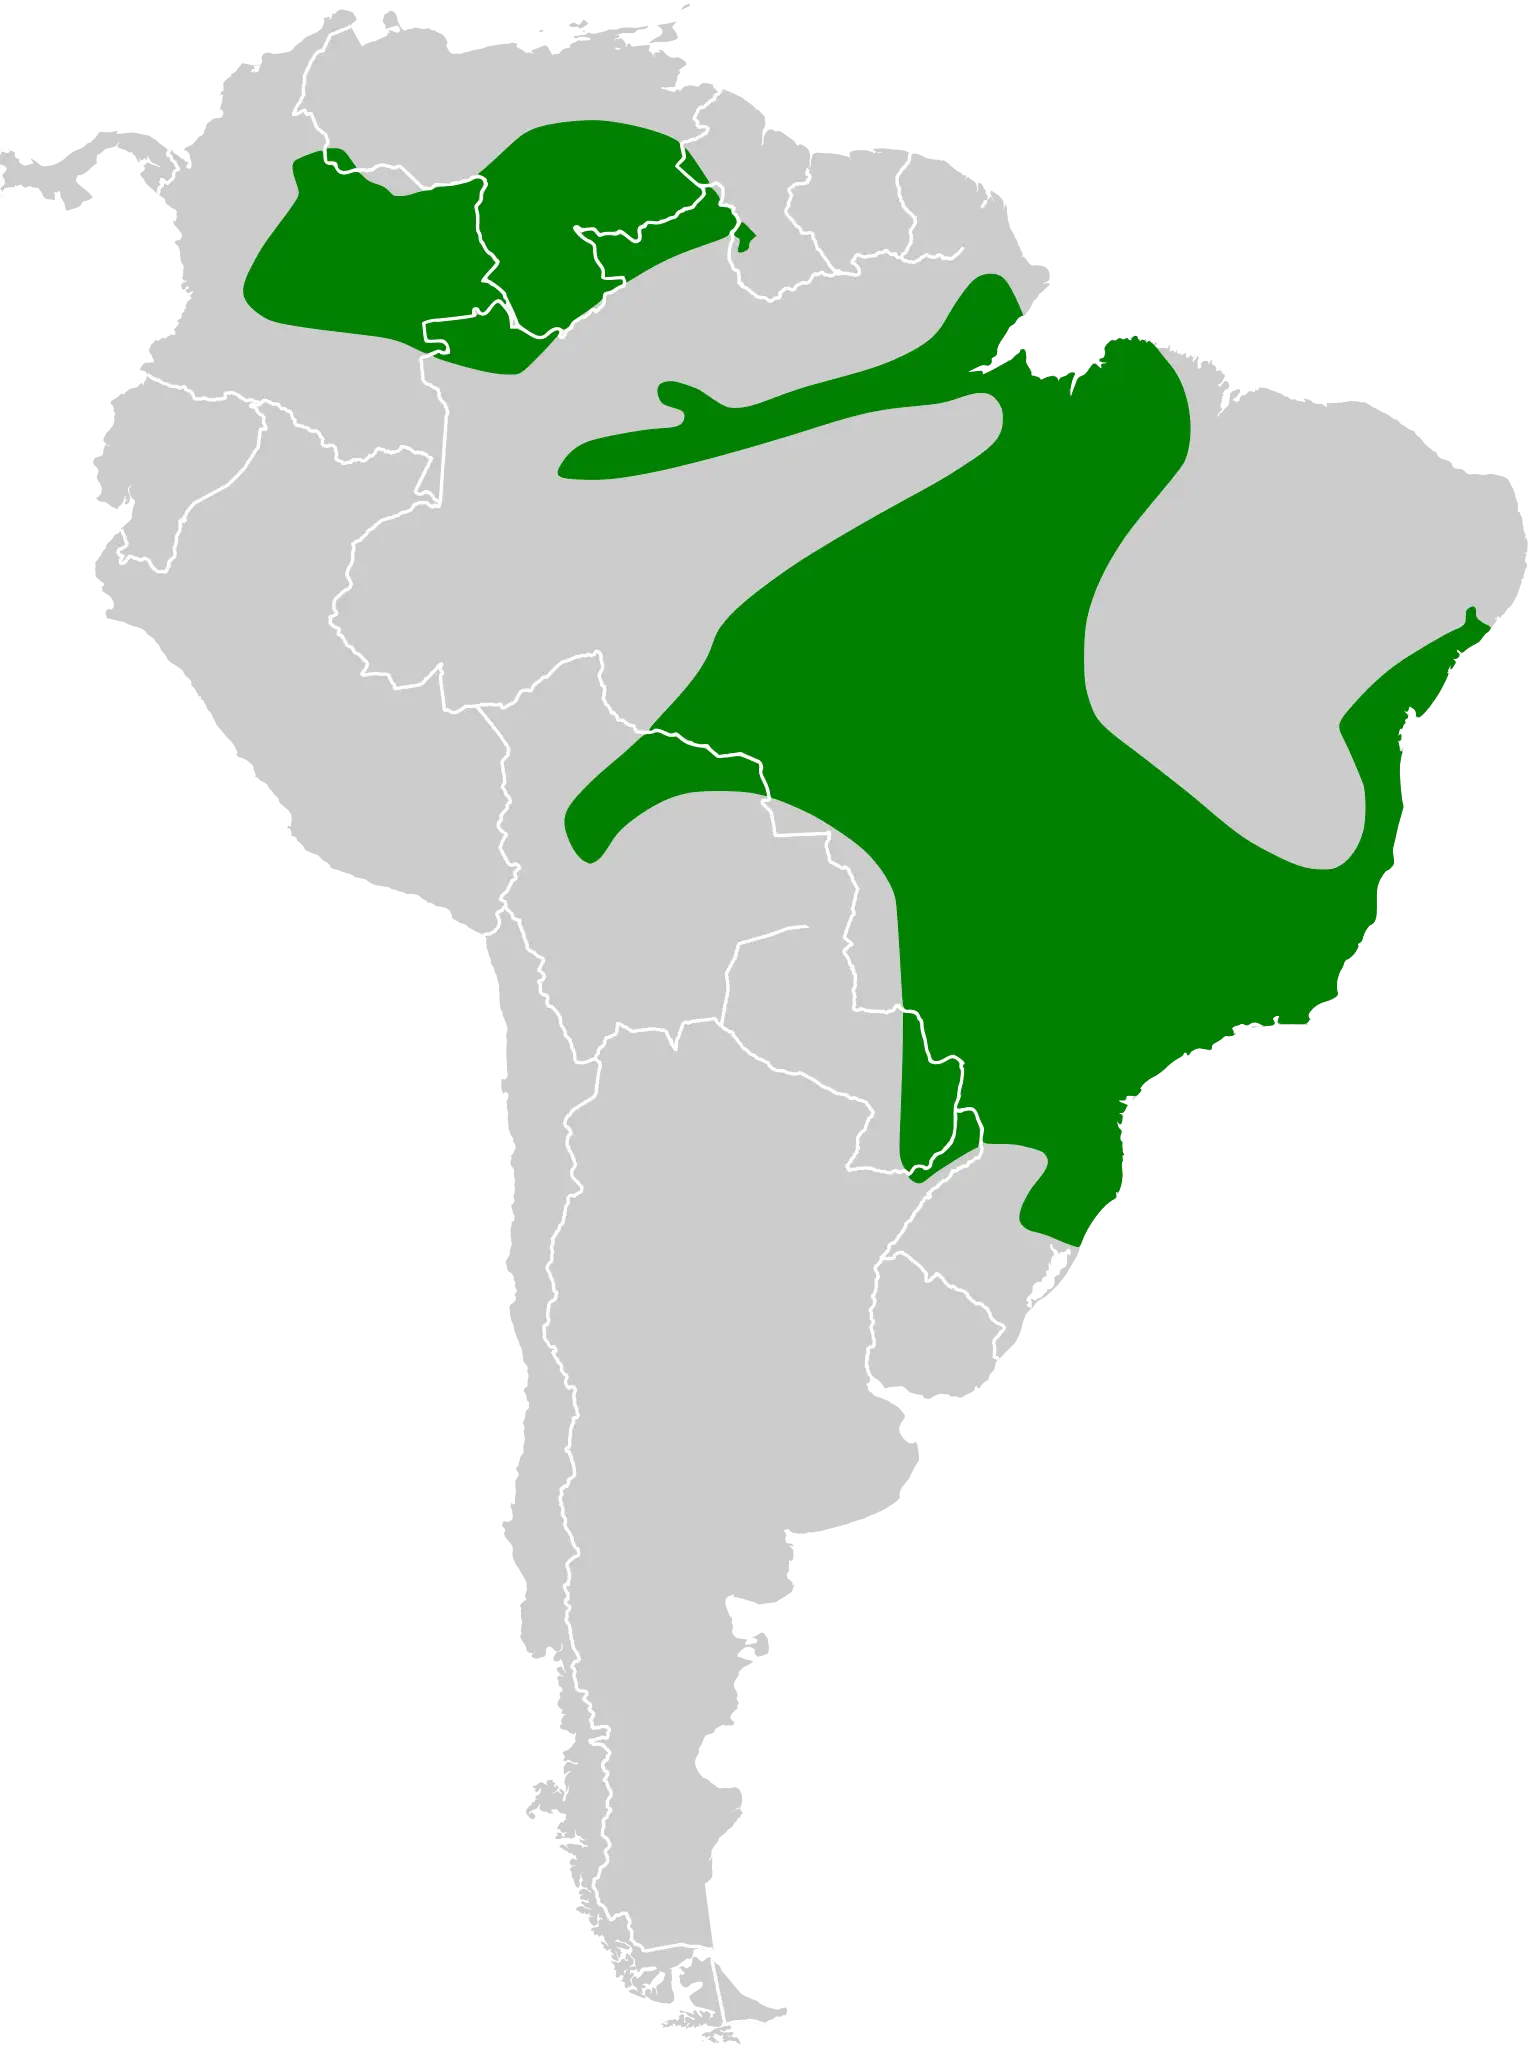 Versicolored emerald habitat map